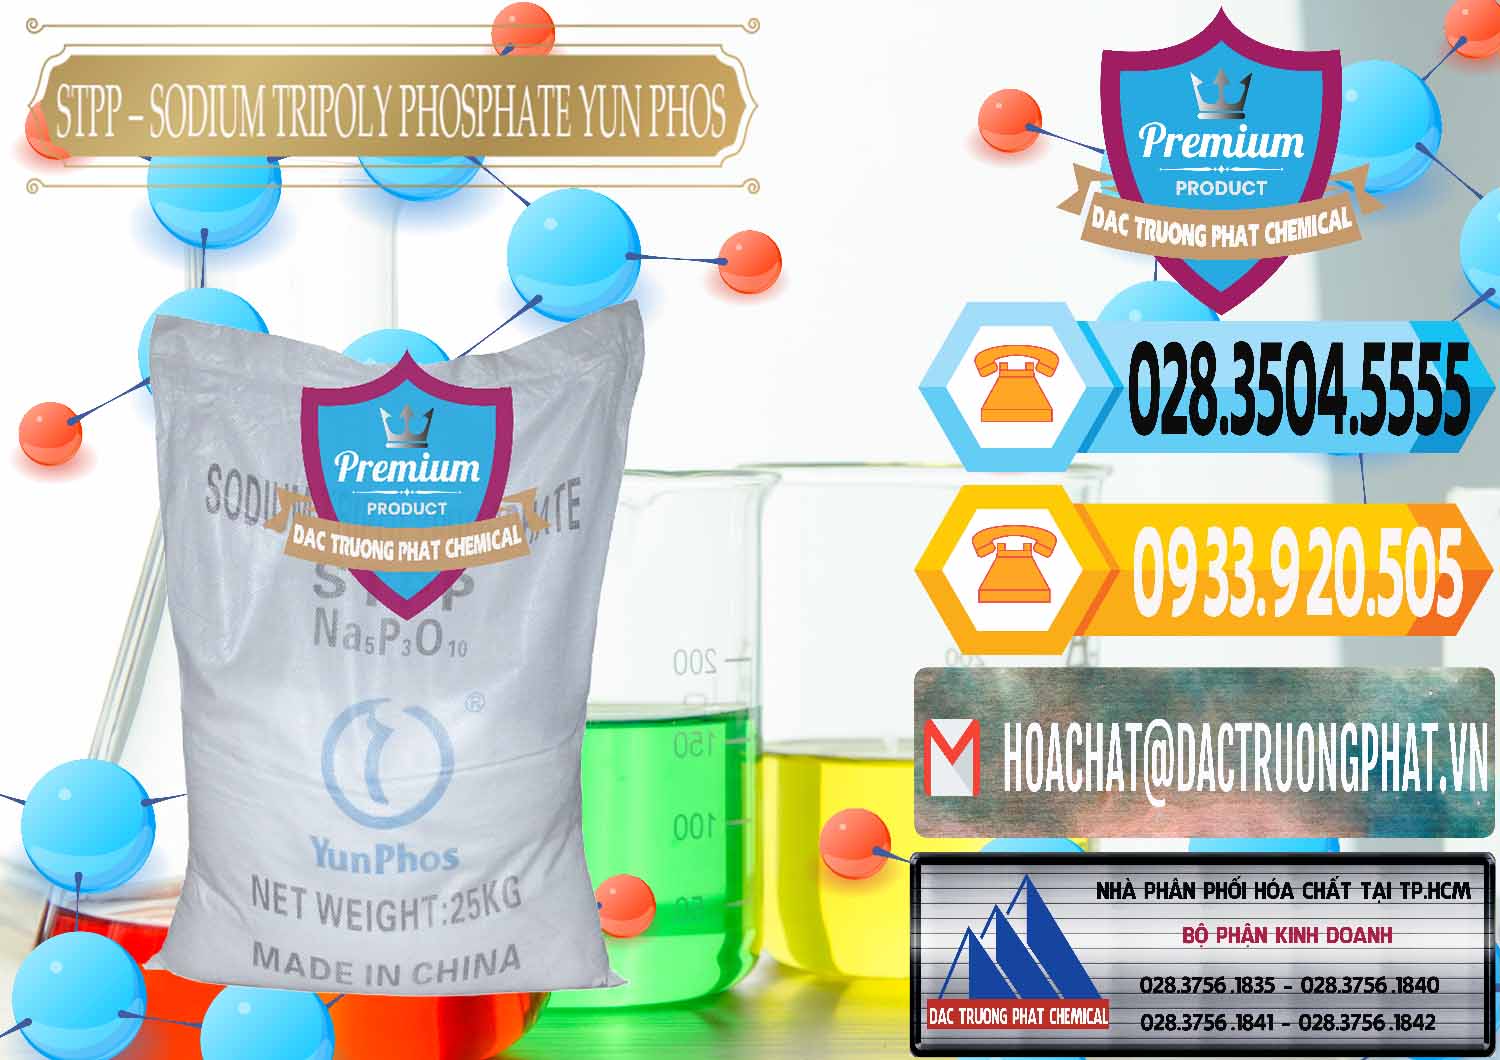 Cty phân phối & bán Sodium Tripoly Phosphate - STPP Yun Phos Trung Quốc China - 0153 - Nhà cung cấp _ kinh doanh hóa chất tại TP.HCM - hoachattayrua.net